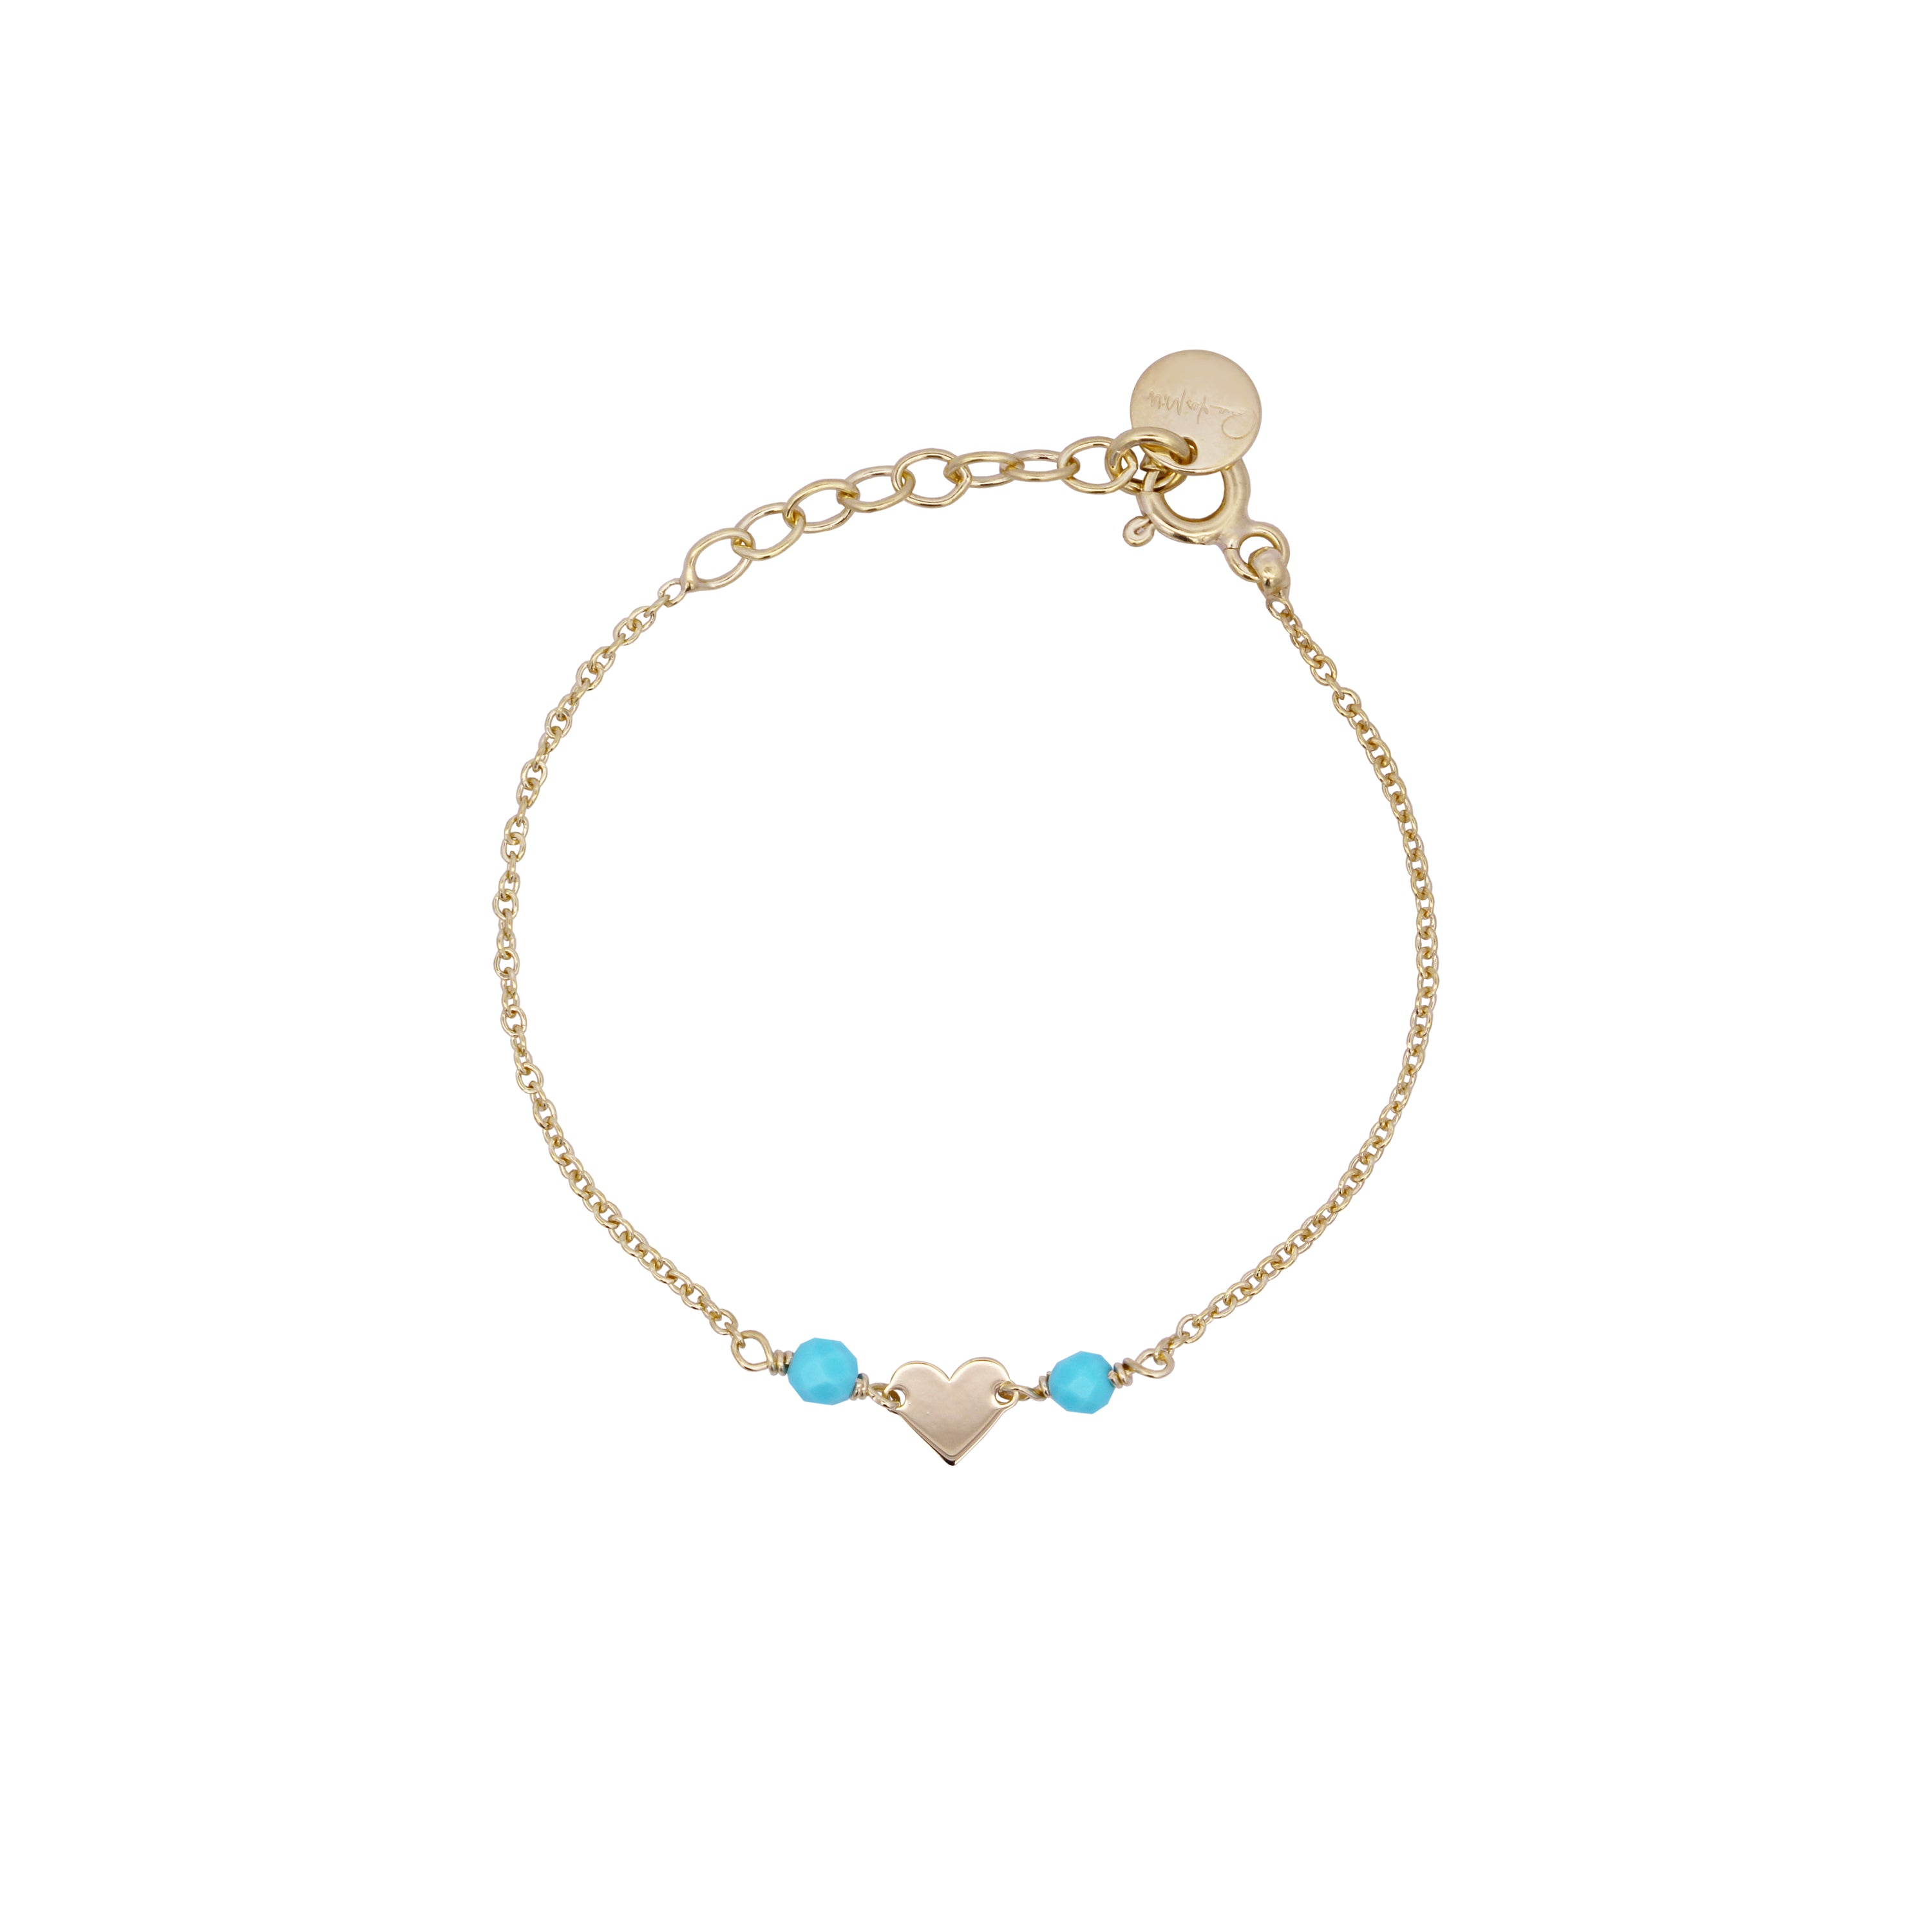 Heart chain bracelet Turquoise Stones Child - Io&Ro